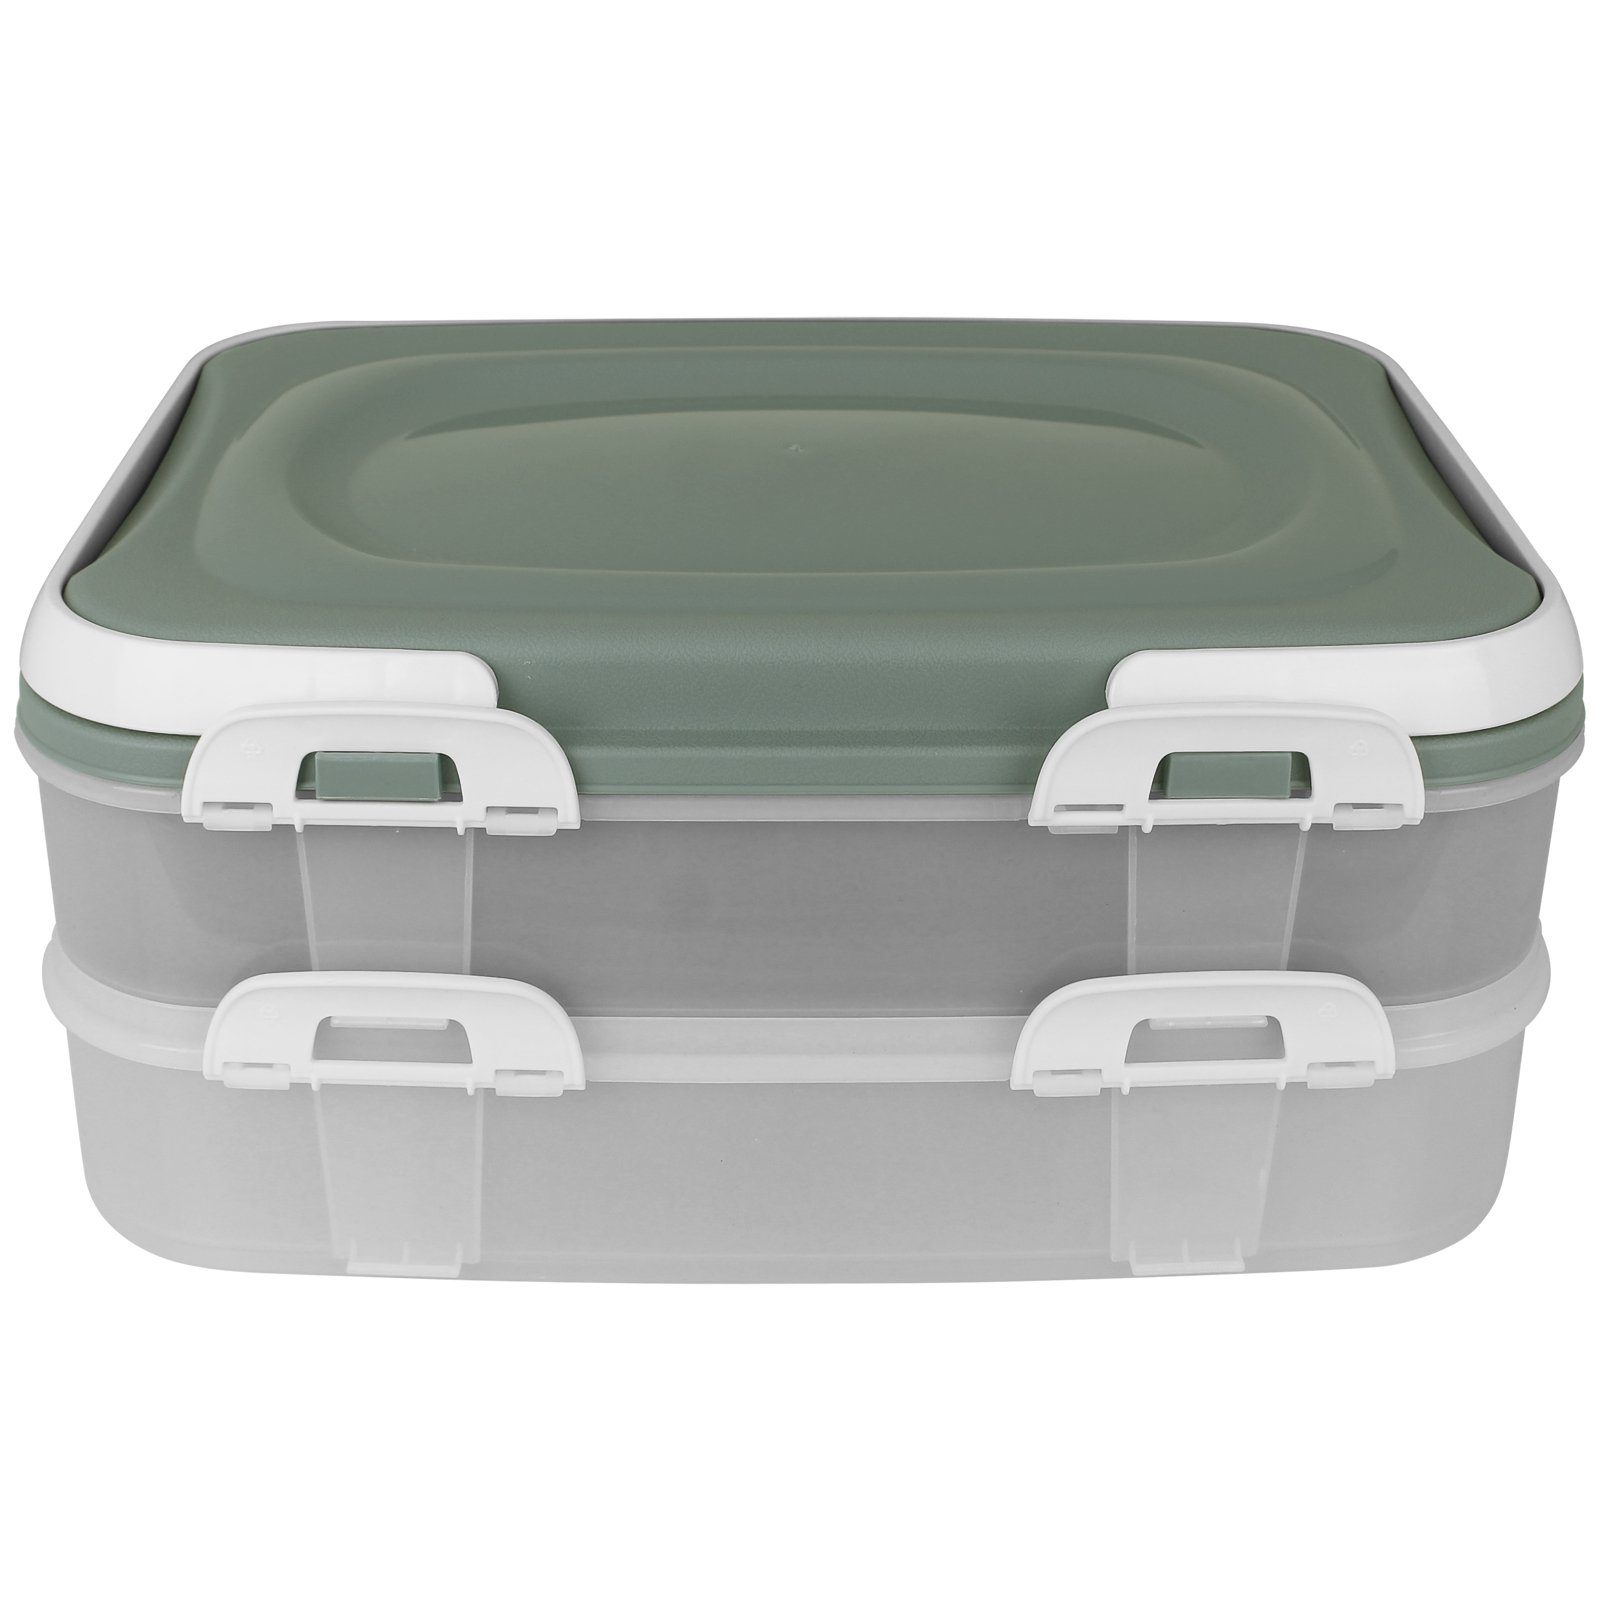 Grün Kuchencontainer 2 Centi Kuchentransportbox Tortenbox Tortenbehälter Farbwahl Etagen Kuchenhaube